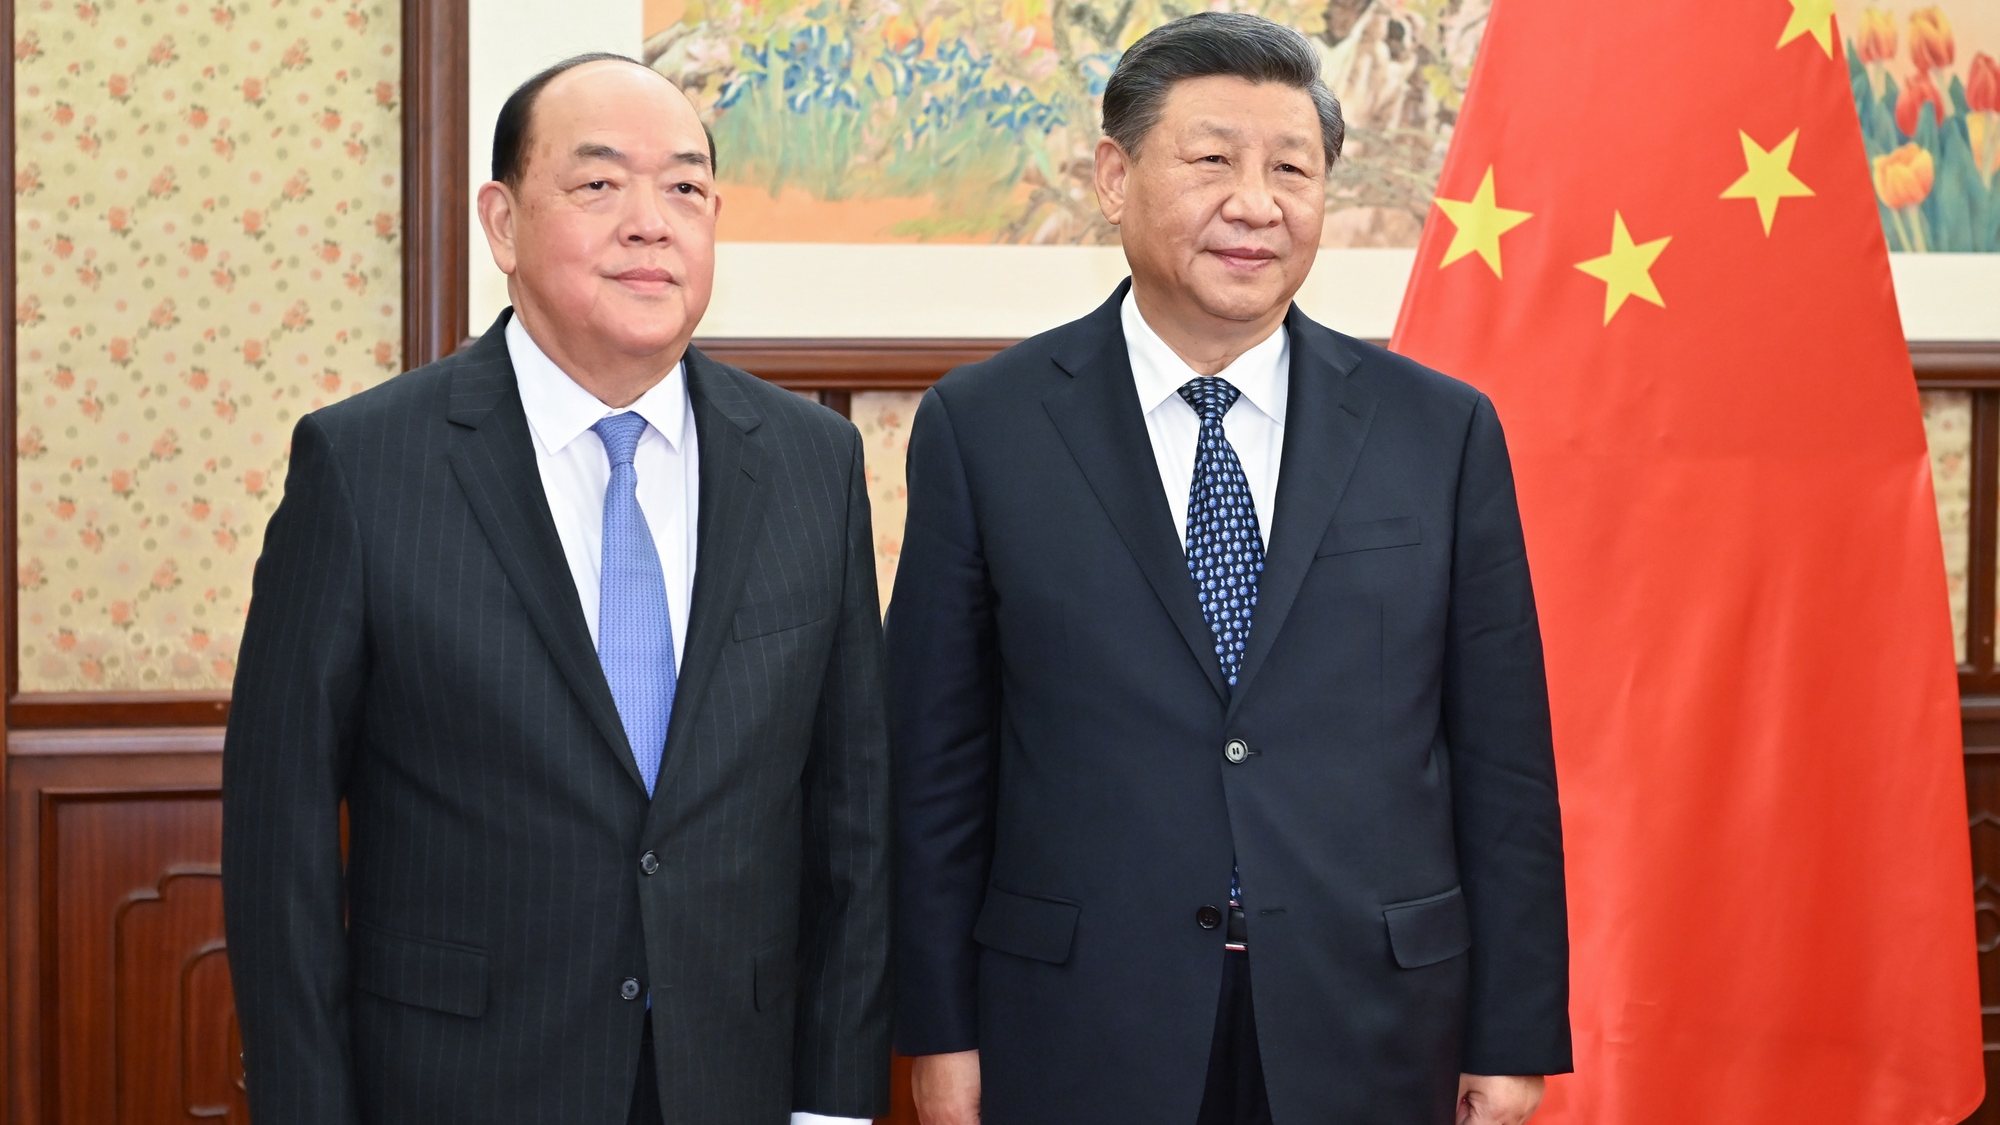 Ho promete a Xi Jinping resultados “ainda maiores” na defesa da segurança da China